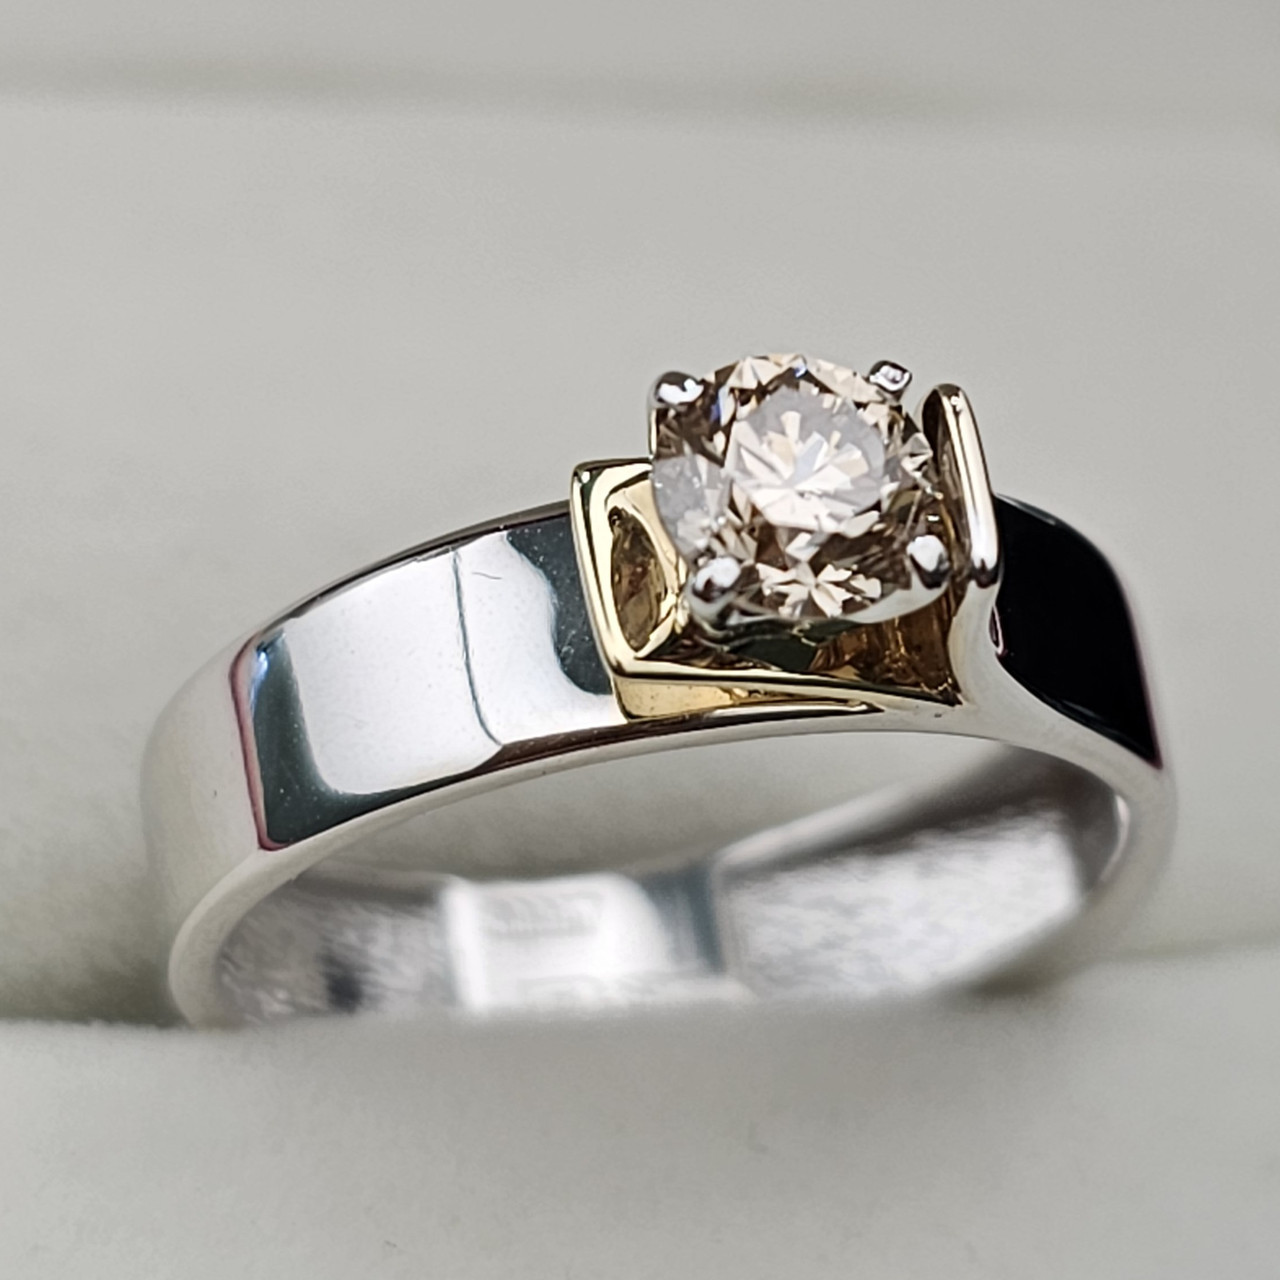 Золотое кольцо с бриллиантами 0.52 Сt  VS1/N  VG - Cut 17 размер